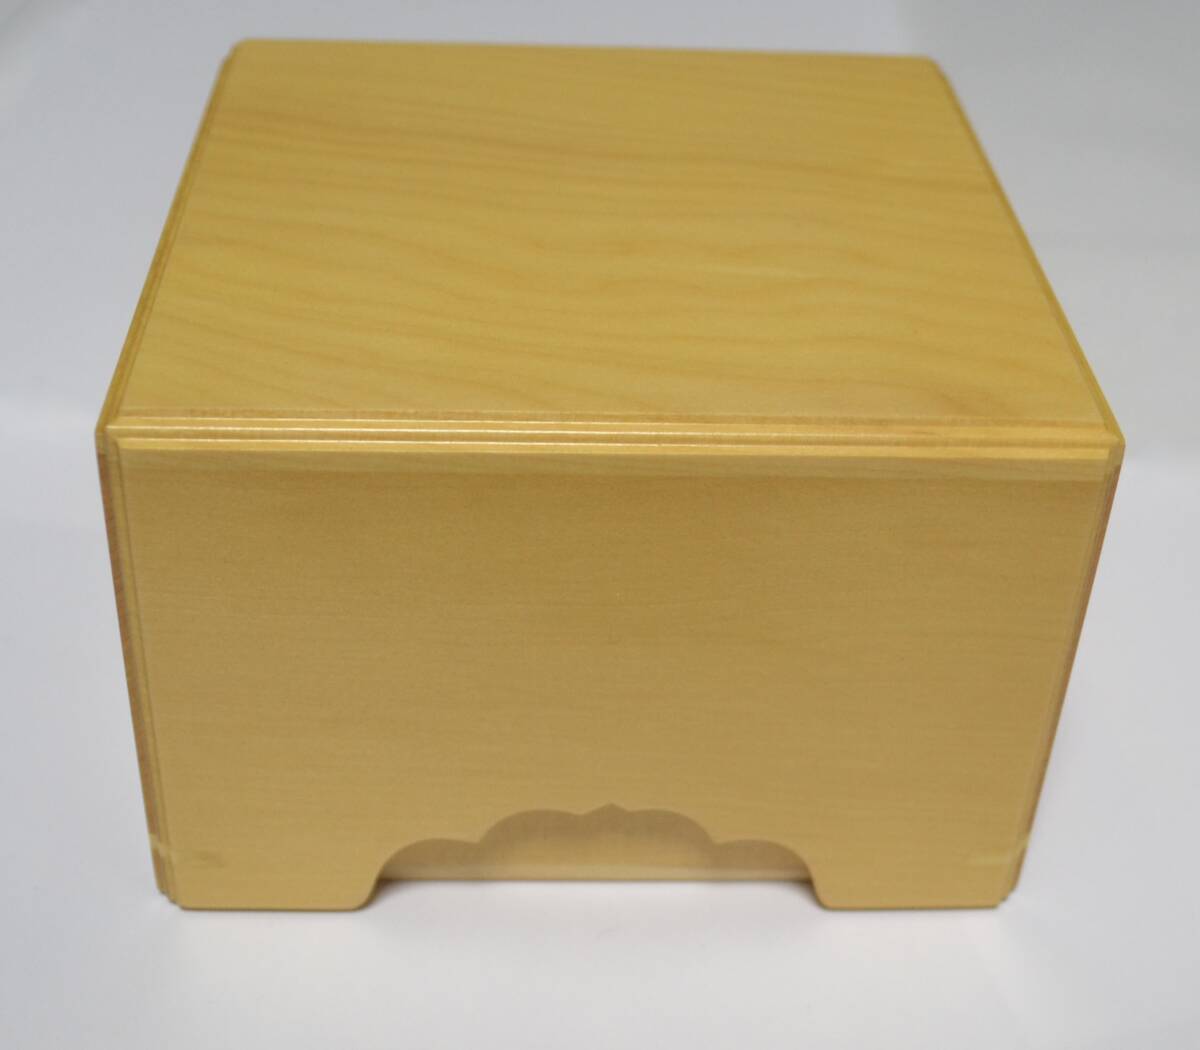 ^. дерево книга@. общий гинкго фаска shogi пешка коробка новый товар косметика с коробкой не использовался 